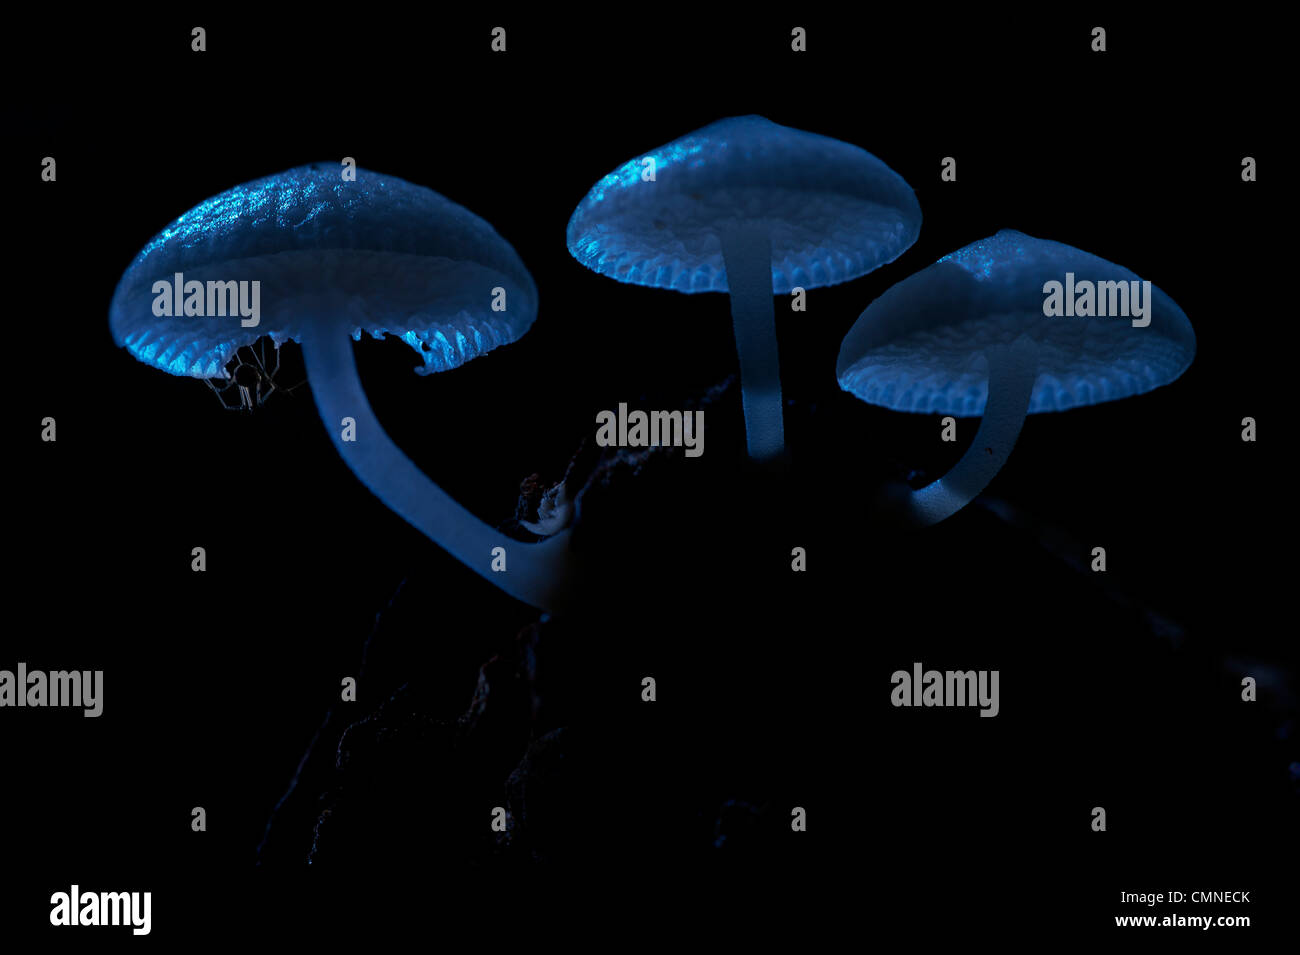 Funghi luminosi al chiaro di luna, con piccola spider in appoggio sul lato inferiore. Montane mossy heath forest (kerangas), Maliau Basin, Borneo Foto Stock